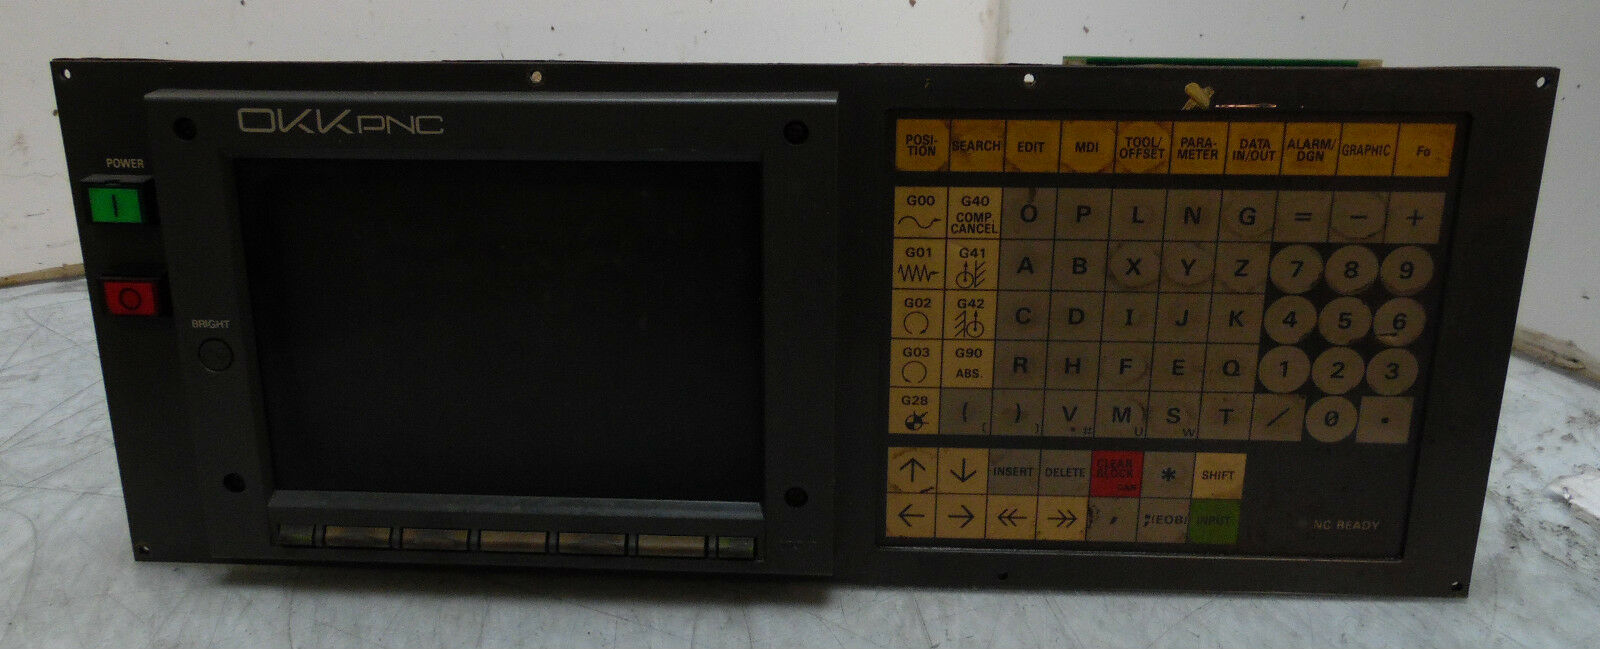 Mitsubishi Betrieb Board, Unit # Ok901b-2, W/Bn624a810g51 